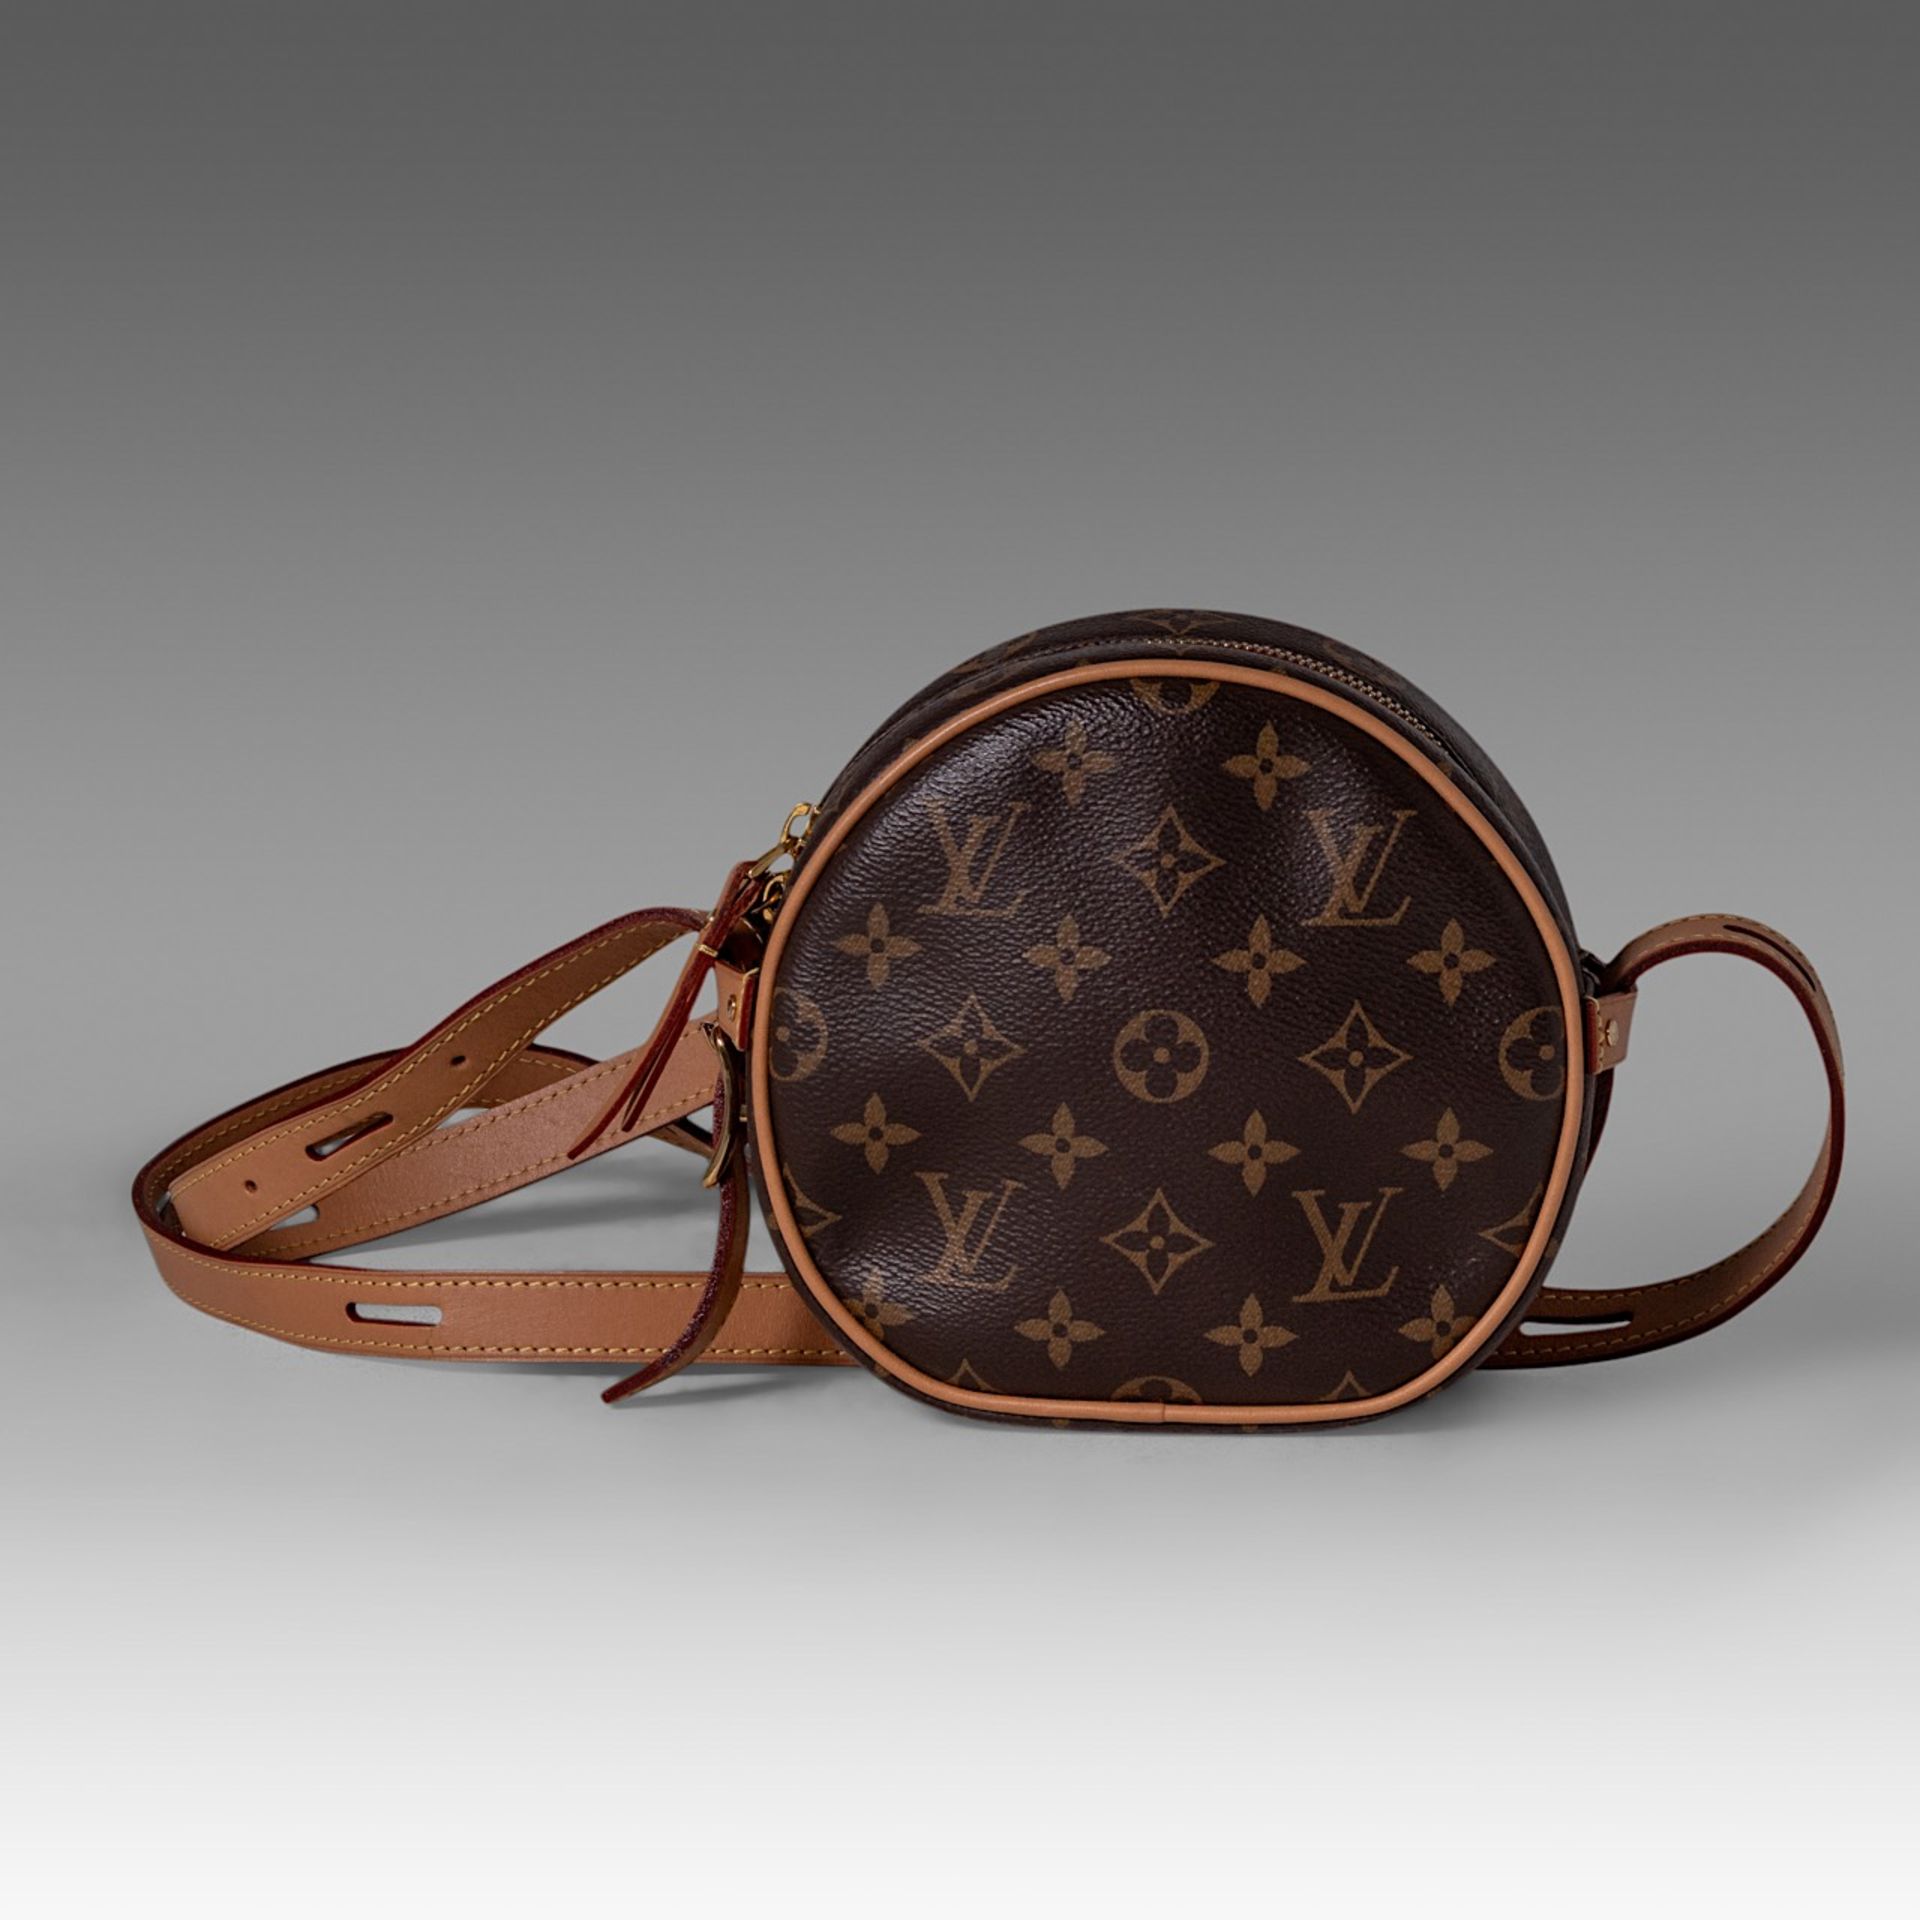 A Louis Vuitton monogram boite chapeau handbag, H 16 cm - Image 3 of 9